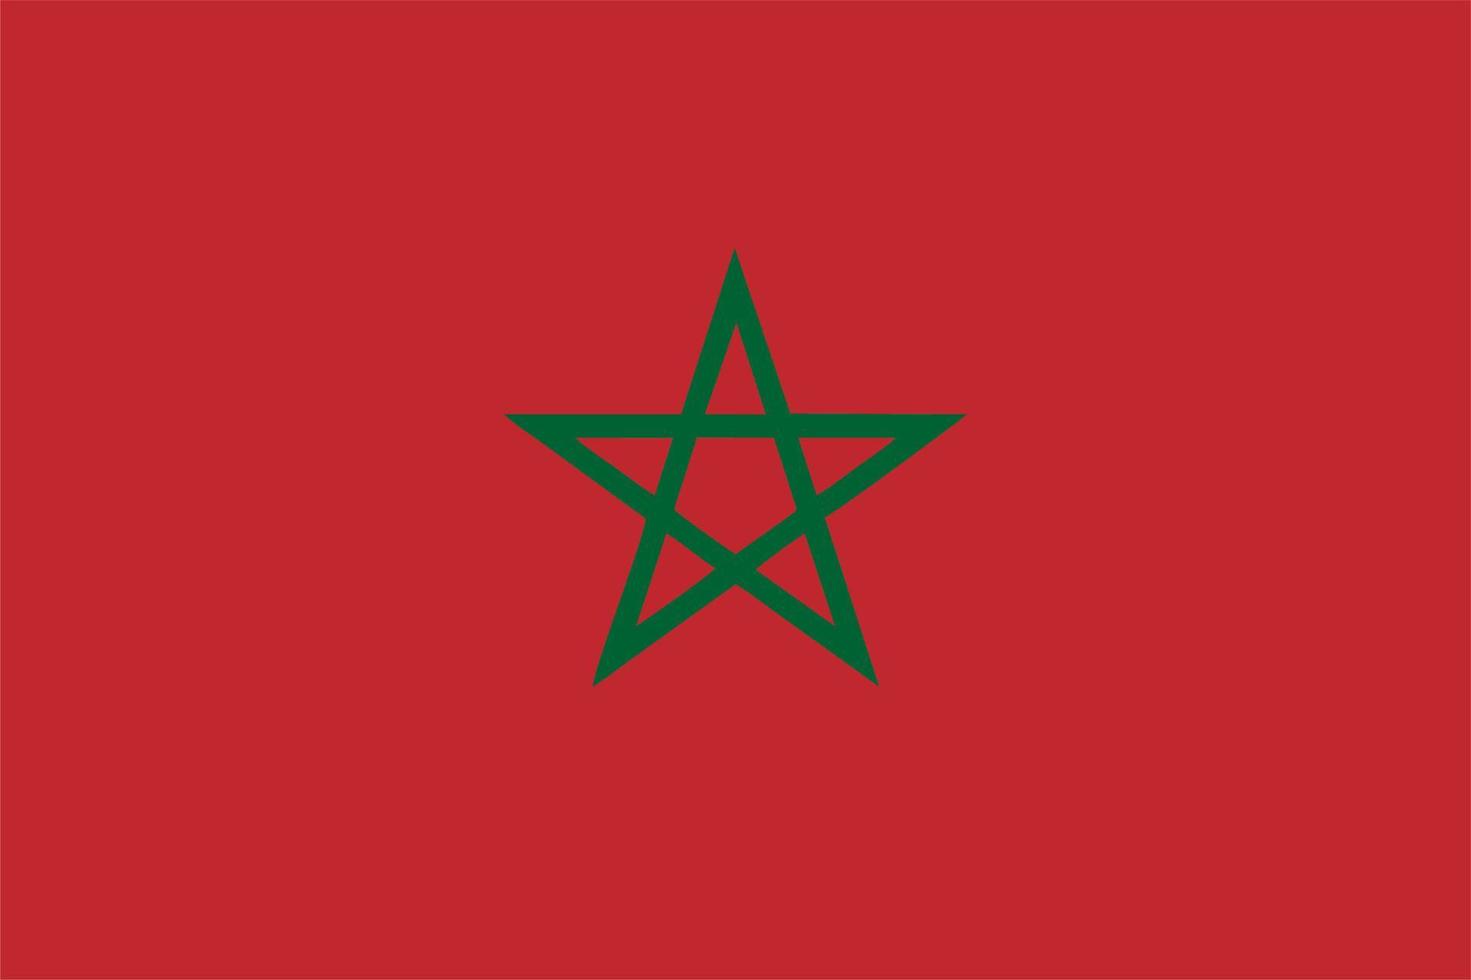 Morocco flag, flag of Morocco vector illustration